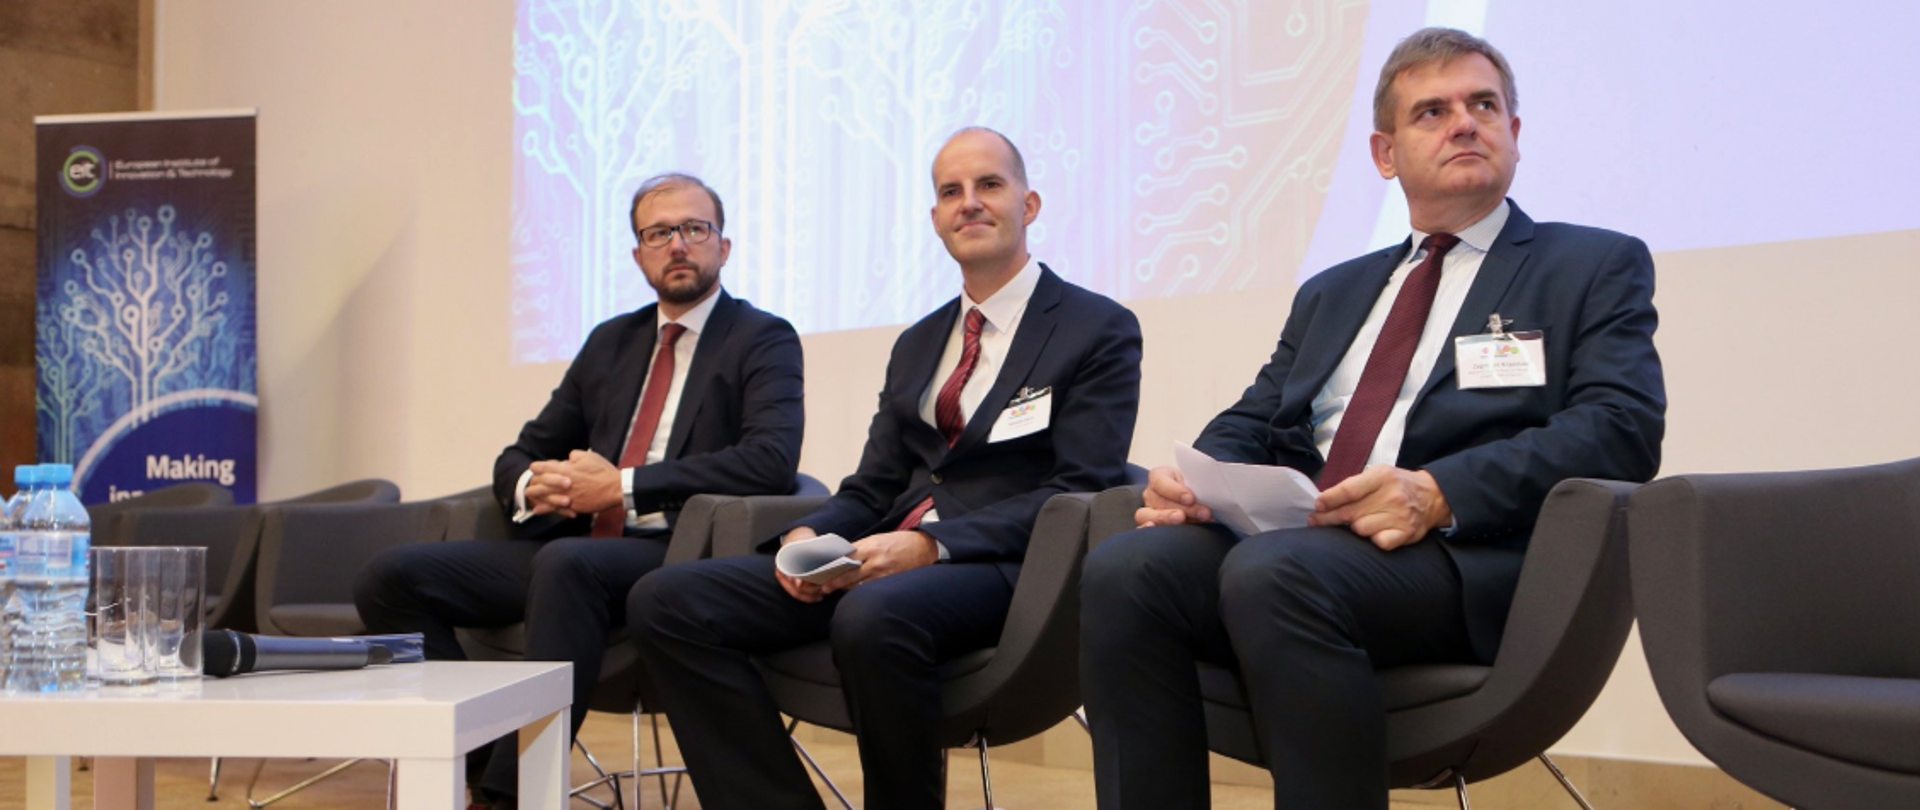 Na zdjęciu widać wiceministra Piotra Dardzińskiego i innych uczestników konferencji EIT.